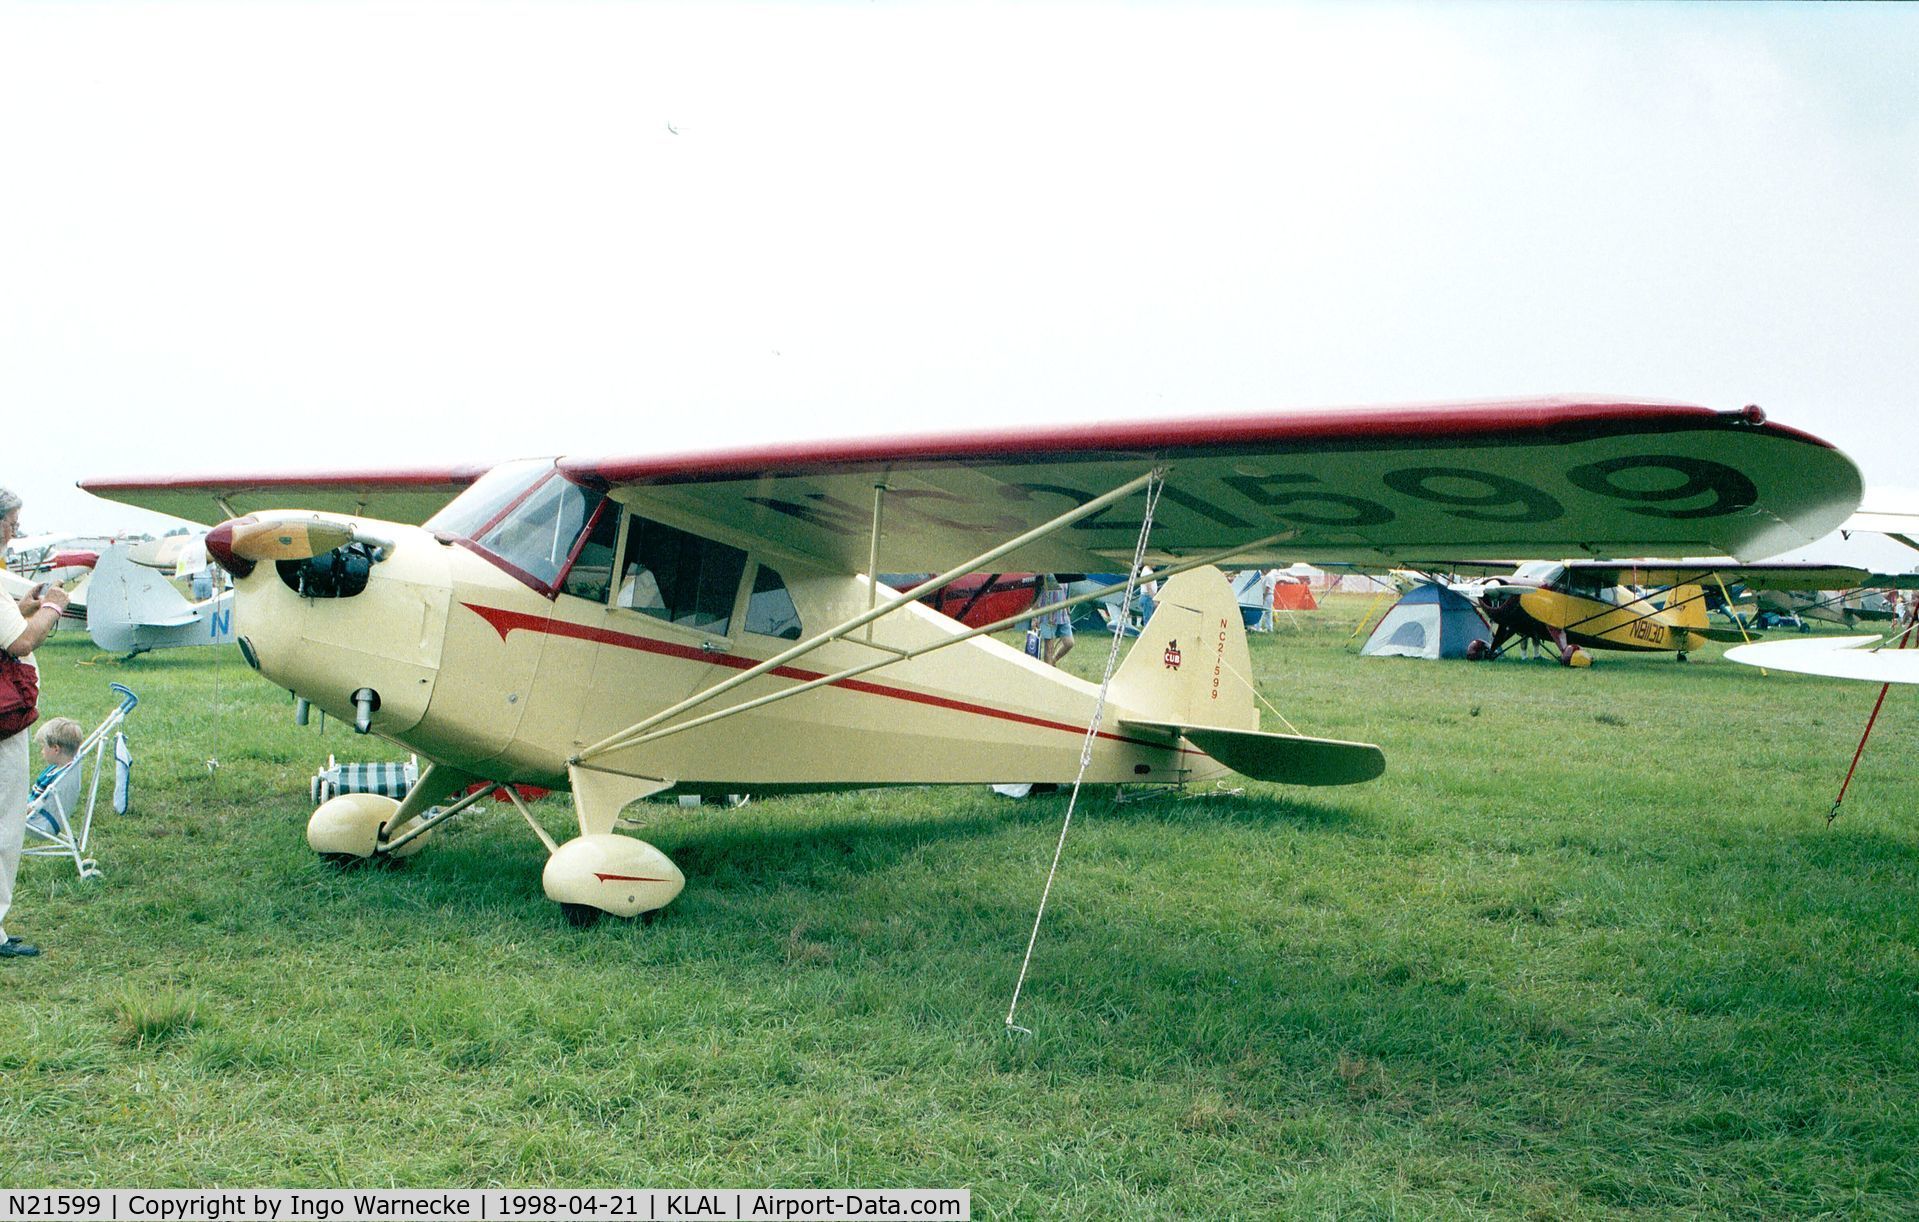 N21599, 1938 Piper J4 C/N 4-400, Piper J4 Cub Coupe at Sun 'n Fun 1998, Lakeland FL